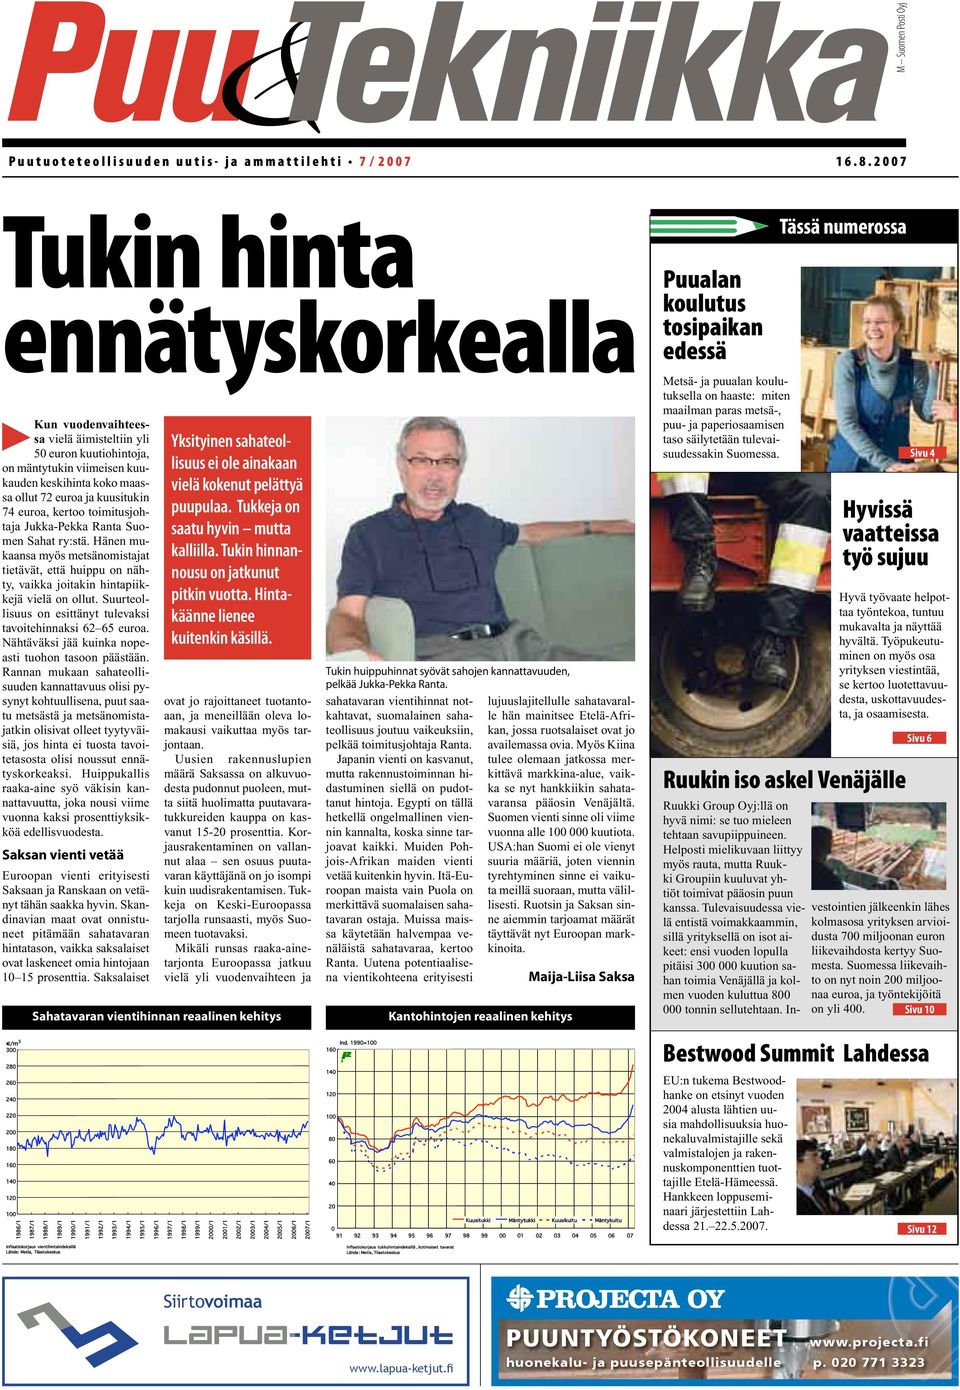 euroa, kertoo toimitusjohtaja Jukka-Pekka Ranta Suomen Sahat ry:stä. Hänen mukaansa myös metsänomistajat tietävät, että huippu on nähty, vaikka joitakin hintapiikkejä vielä on ollut.